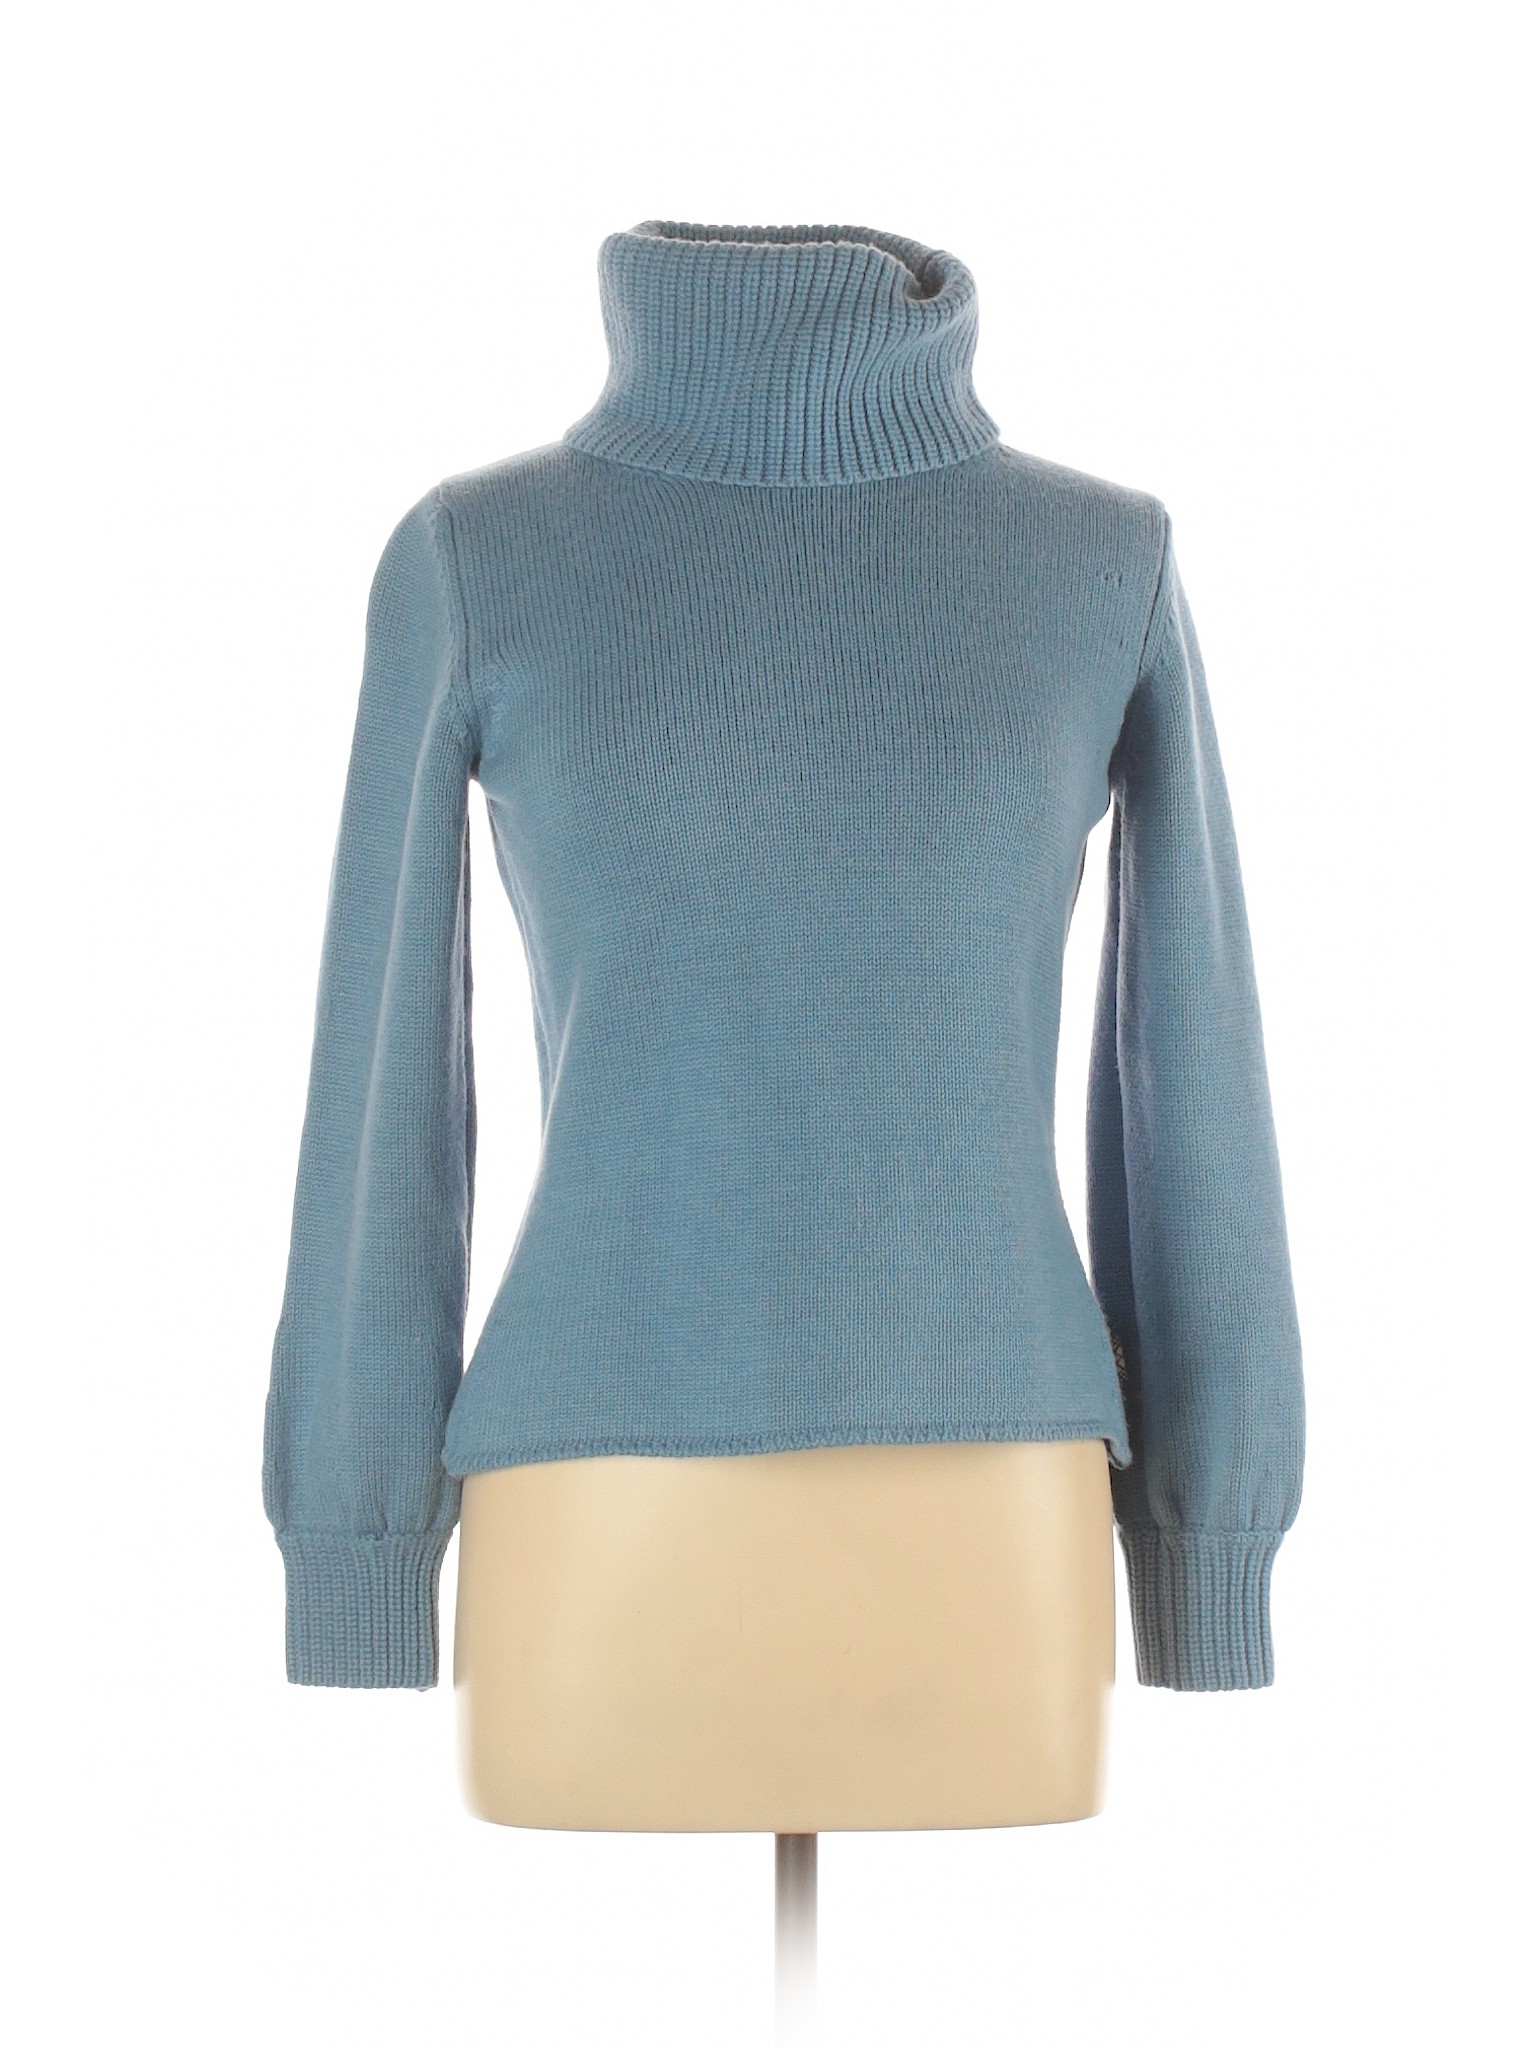 Burberry Women Blue Wool Pullover Sweater L | eBay